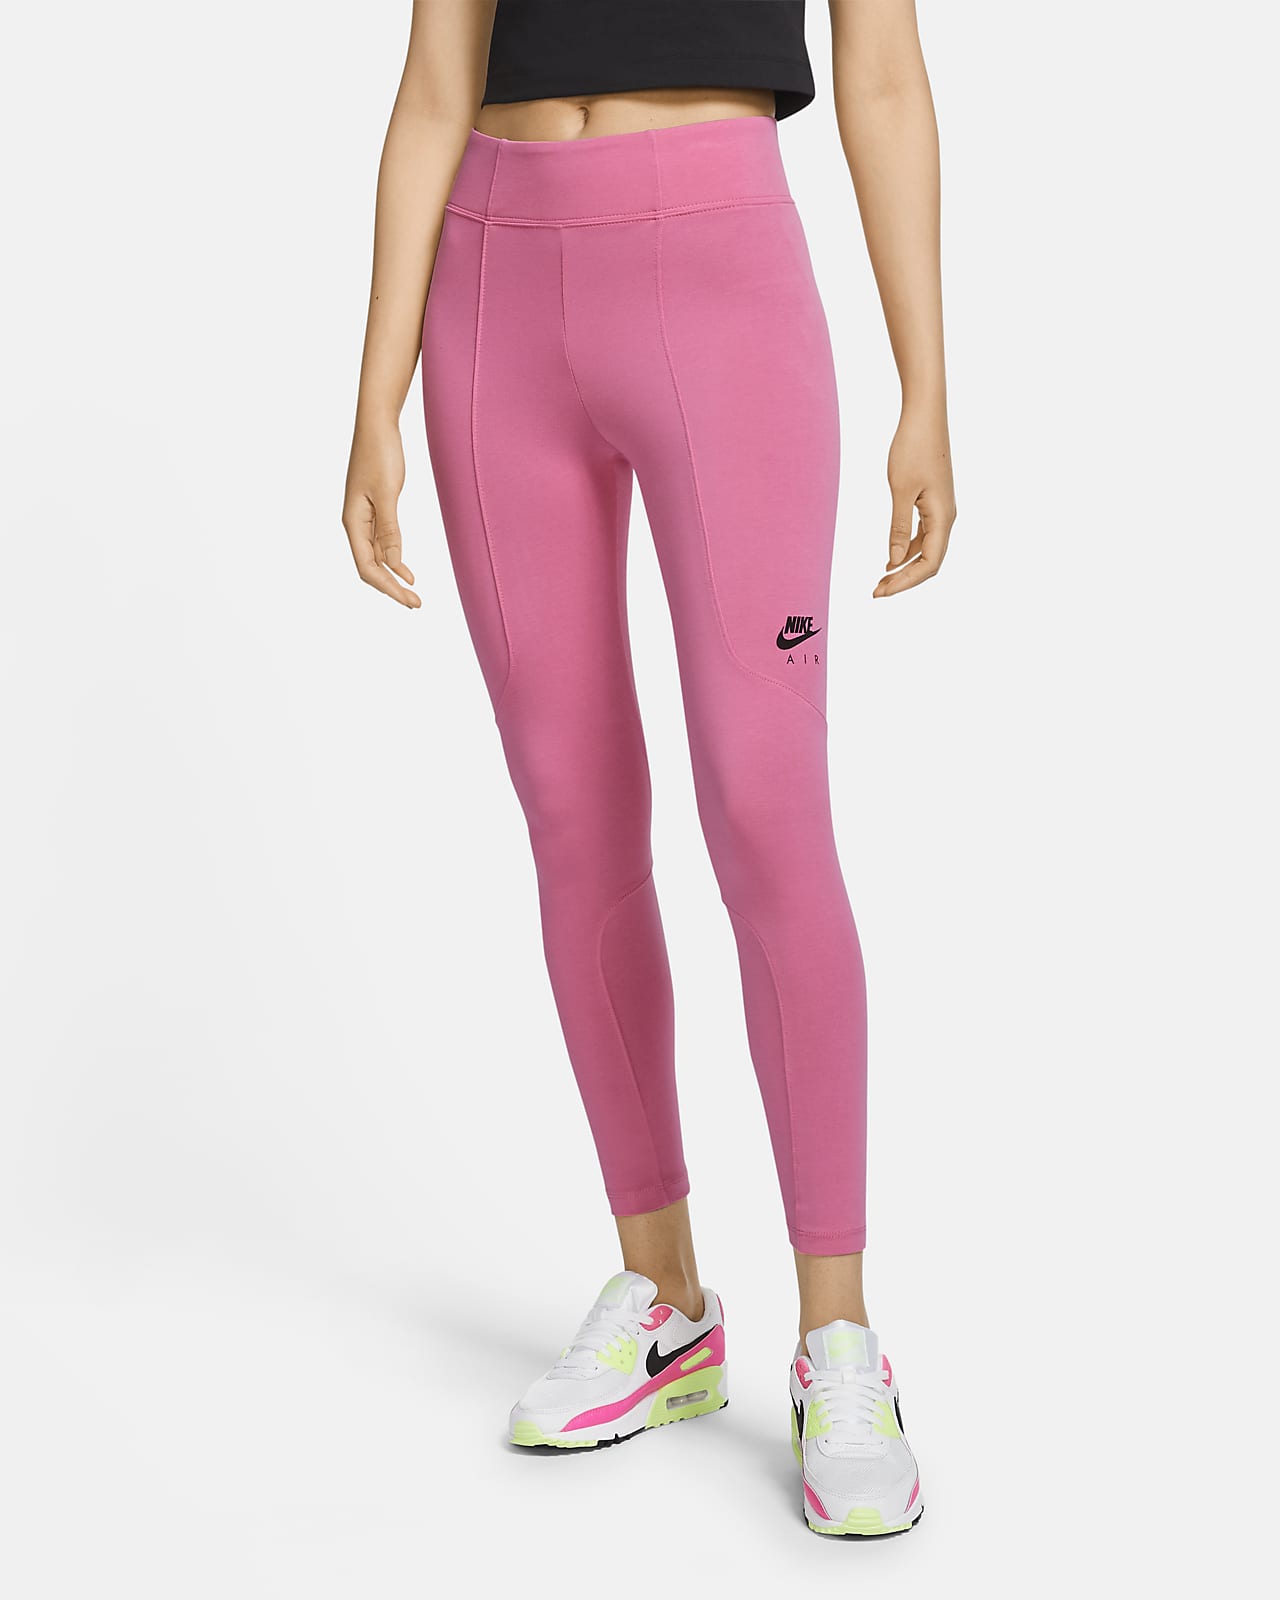 nike air pink leggings